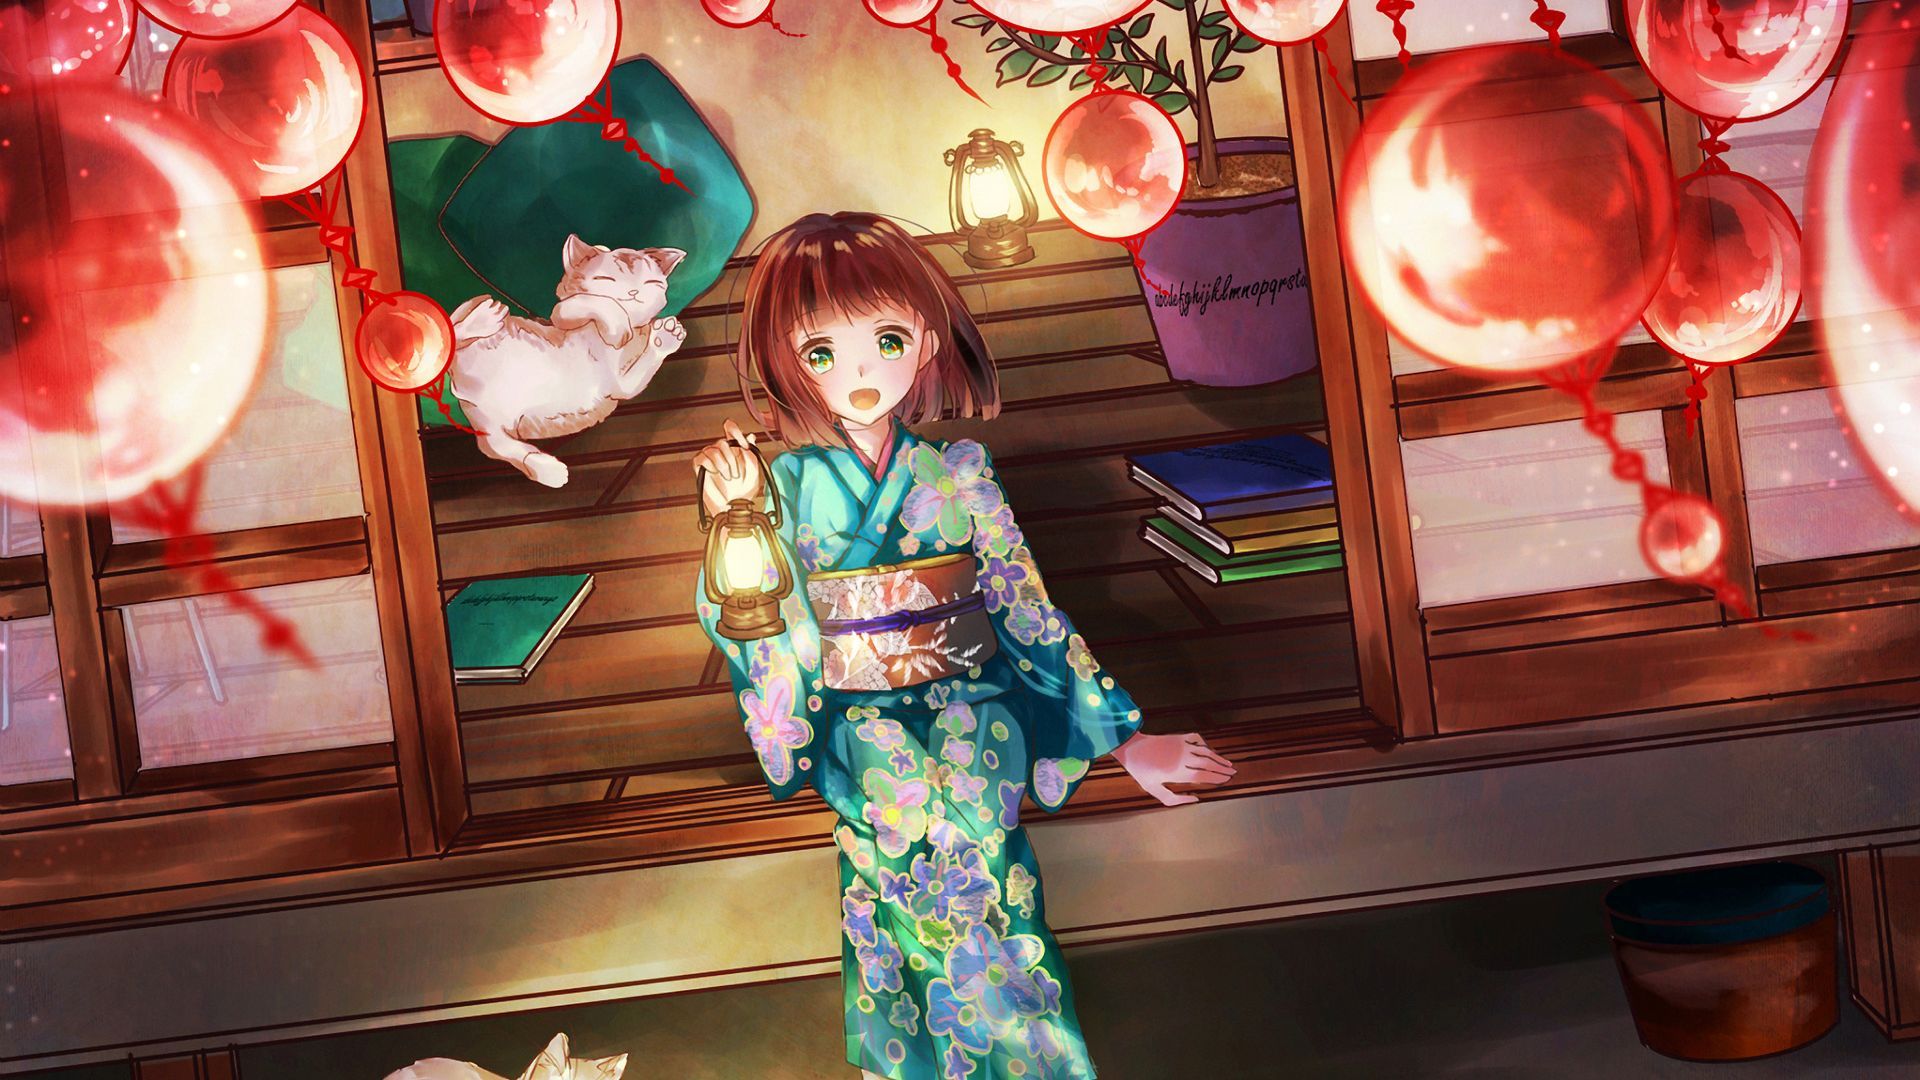 festival, decorations, cute, anime girl .wallpapermug.com